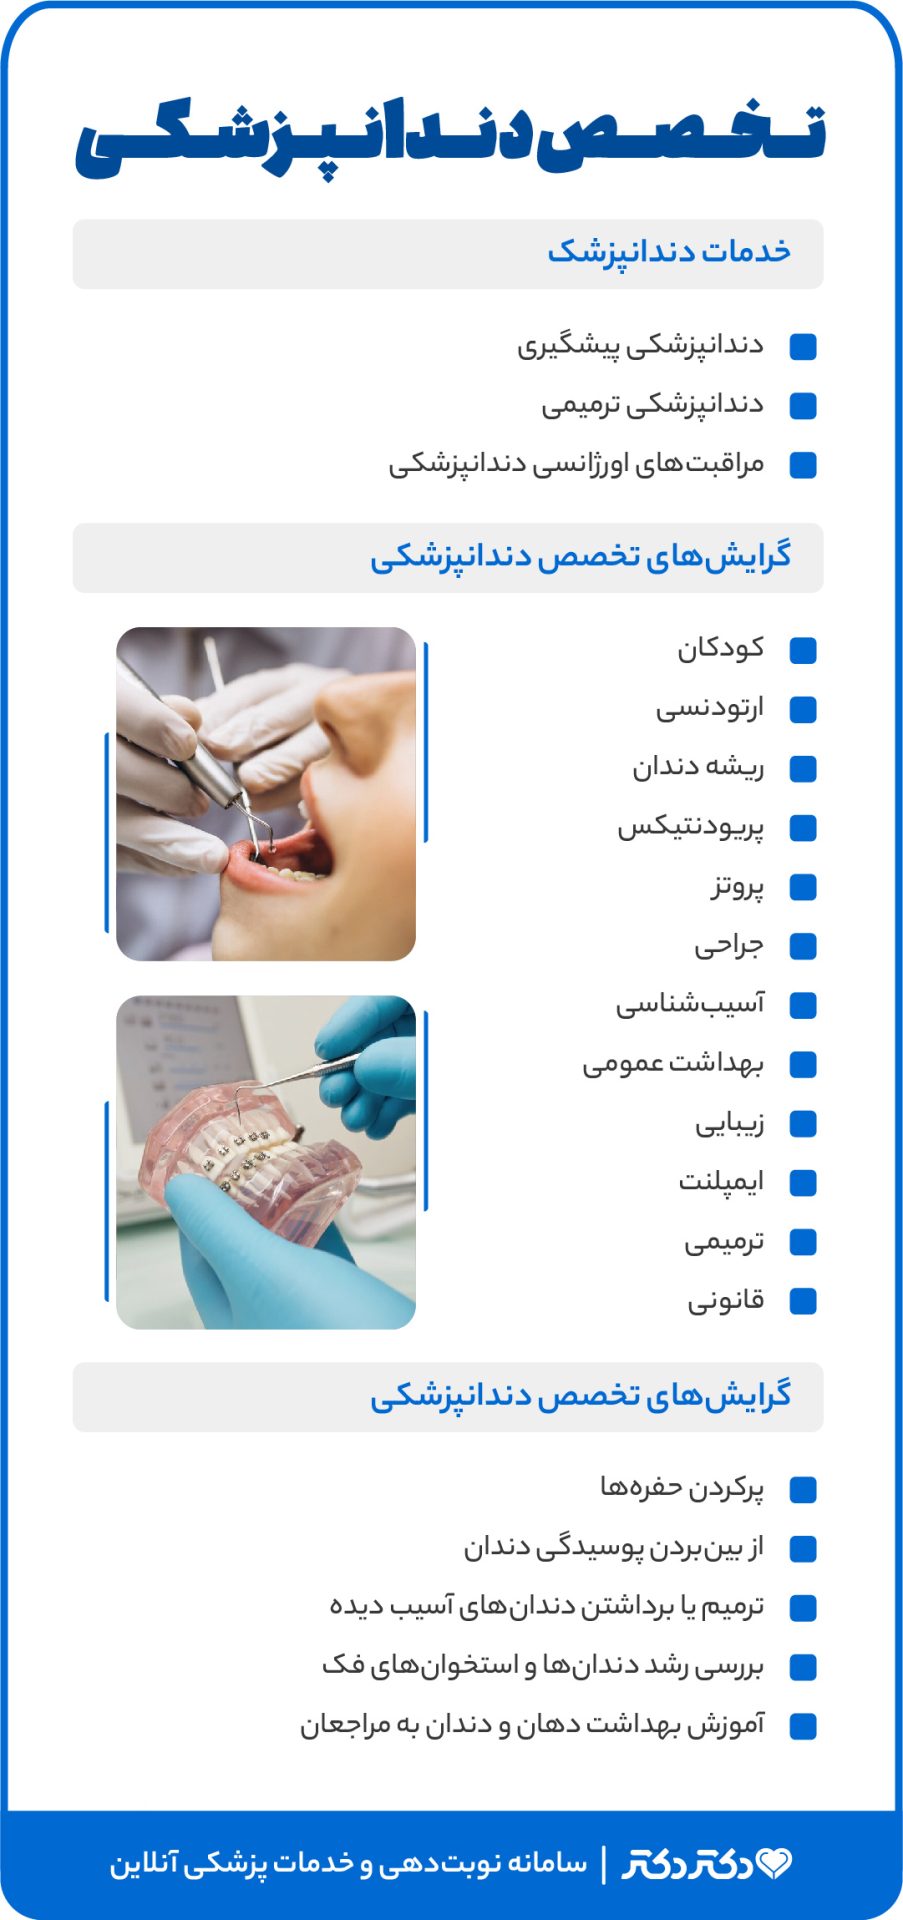 اینفوگرافی خدمات دکتر دندانپزشک